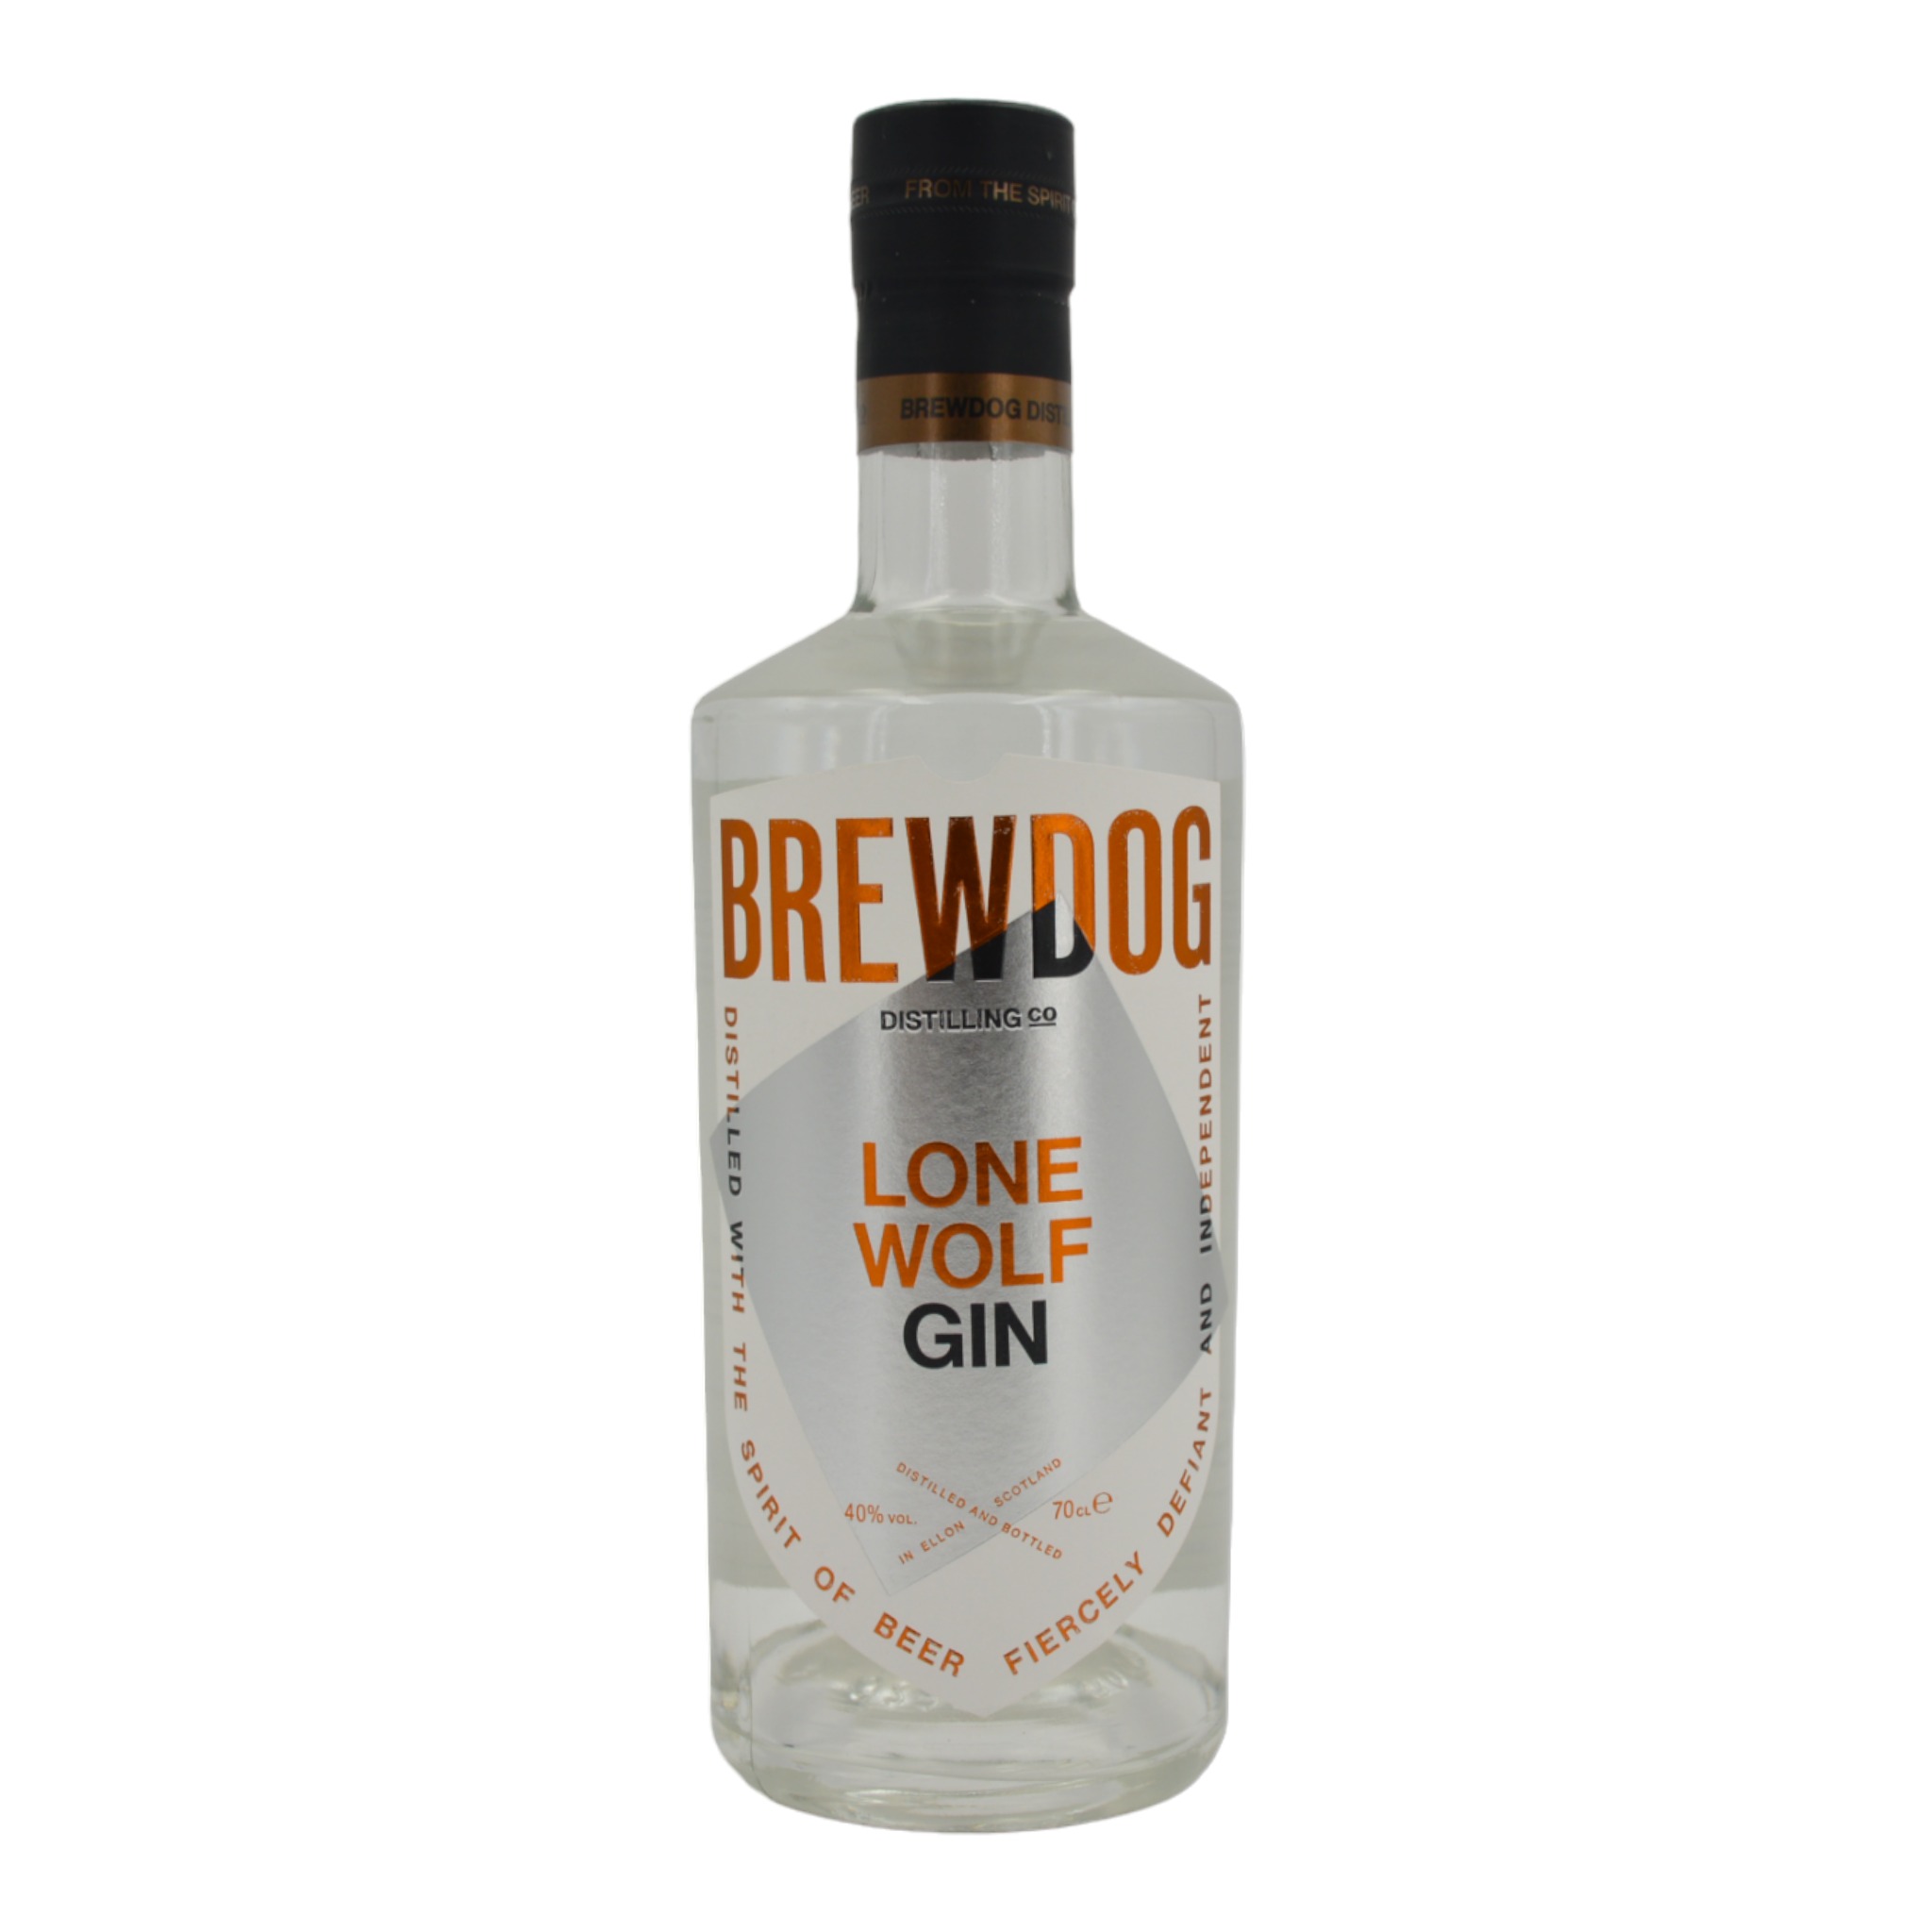 5056025420984Brew Dog Lone Wolf Gin a Spirit Born Different f - Weinhaus-Buecker